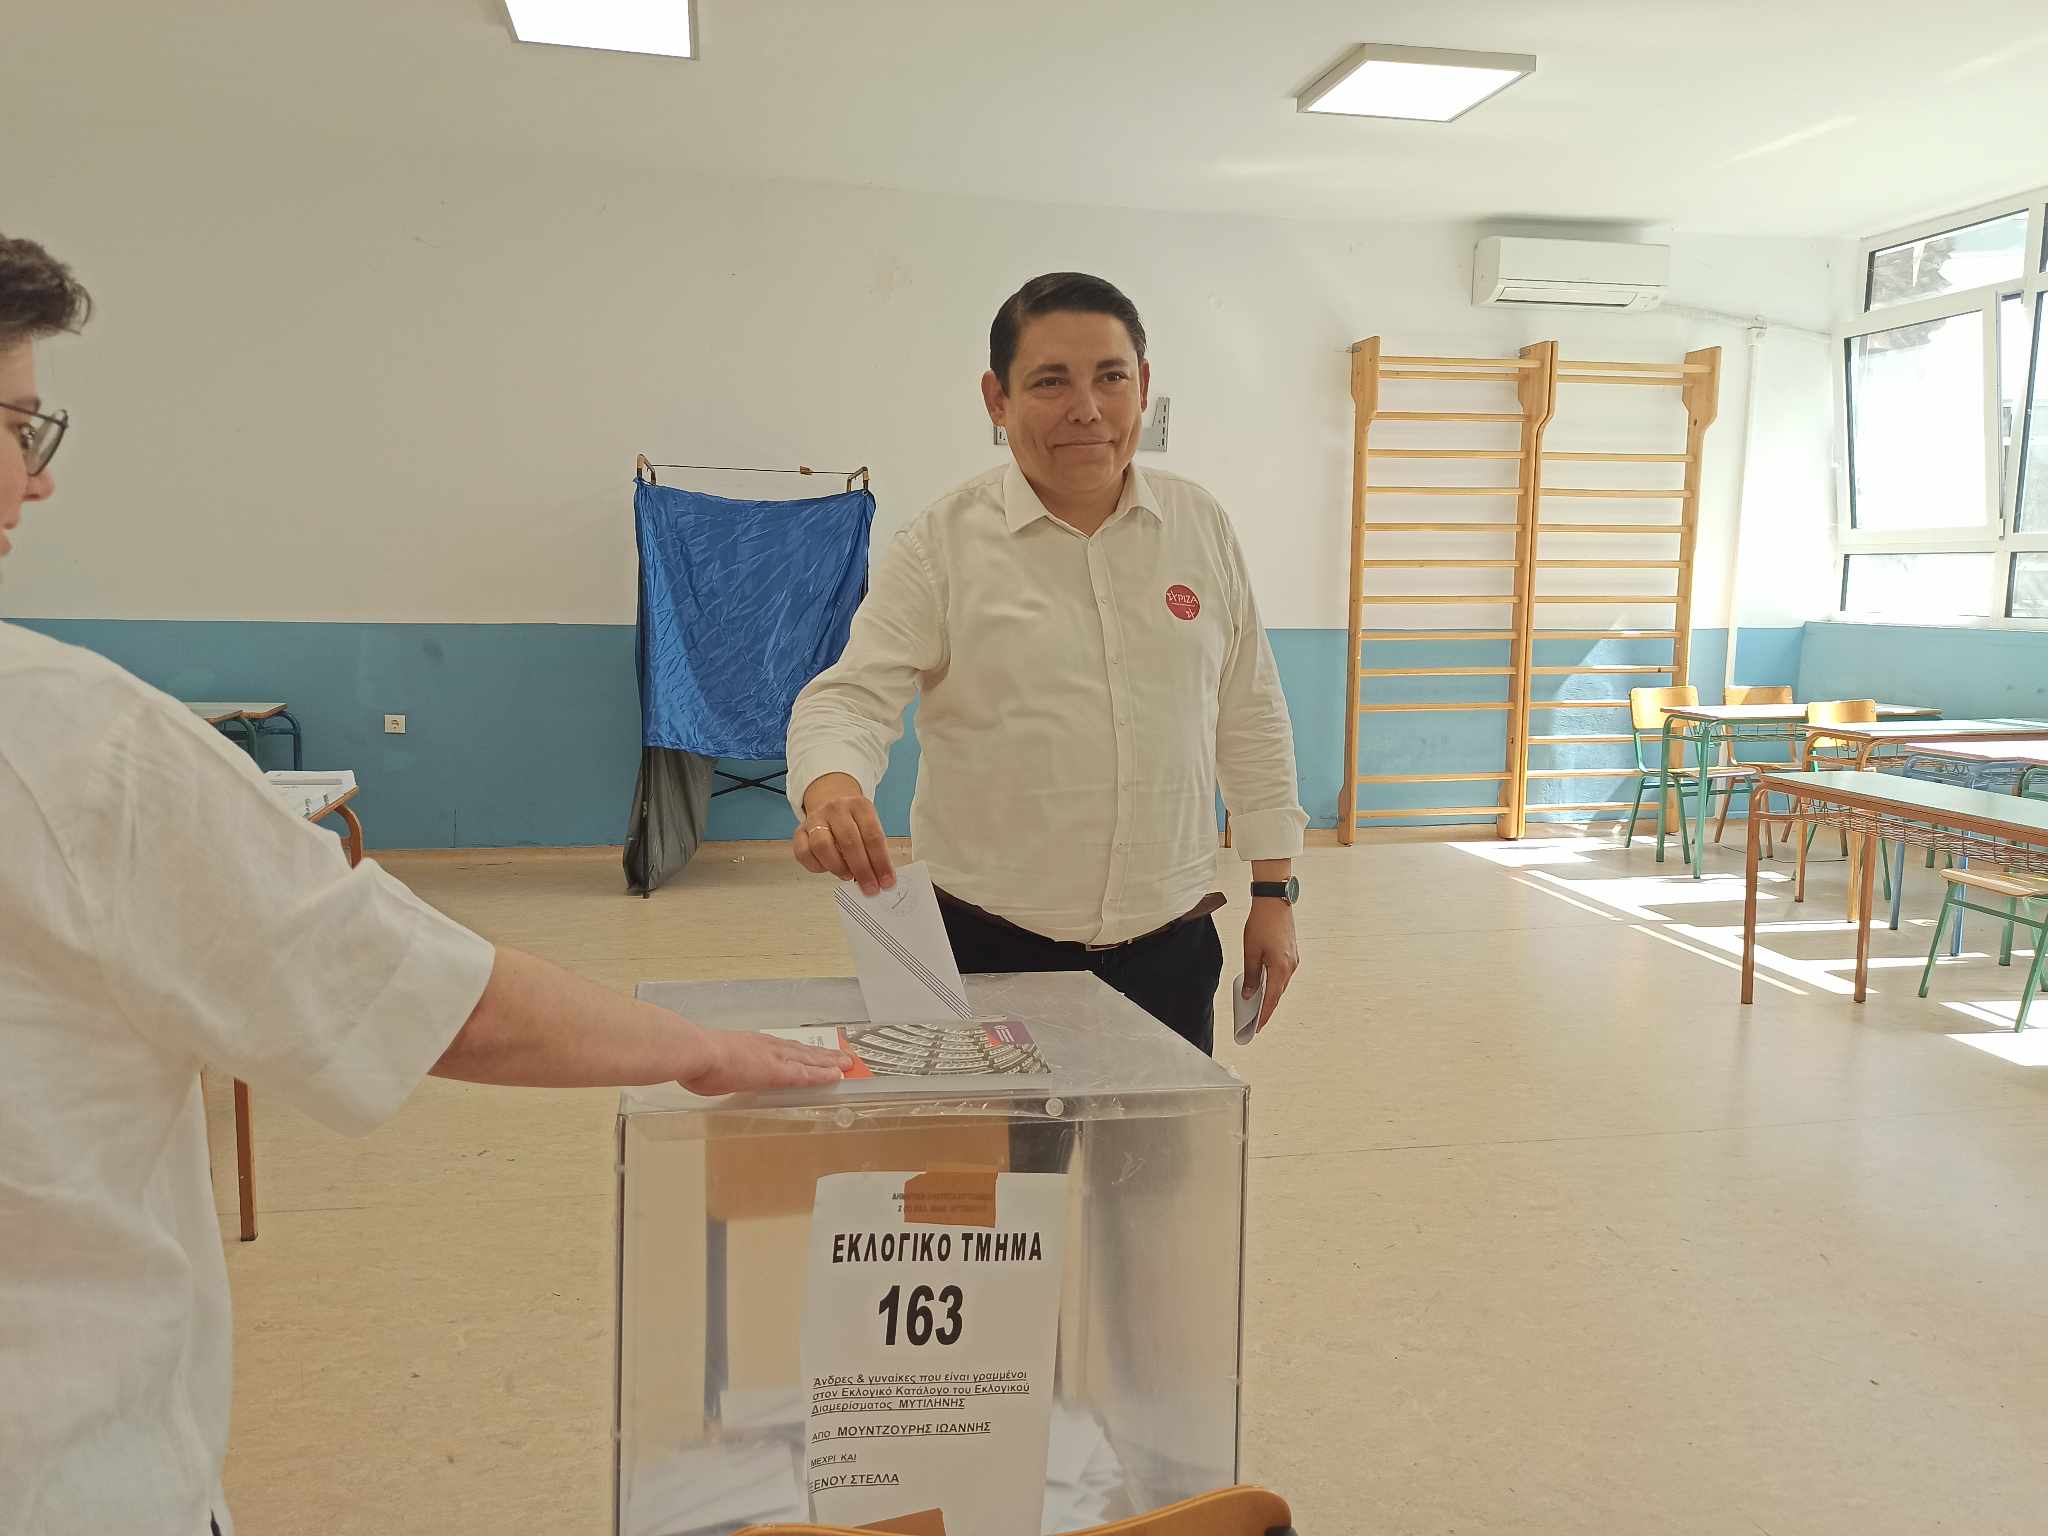 Στο 5ο Λύκειο Μυτιλήνης ψήφισε  ο  Γιάννης Μπουρνούς